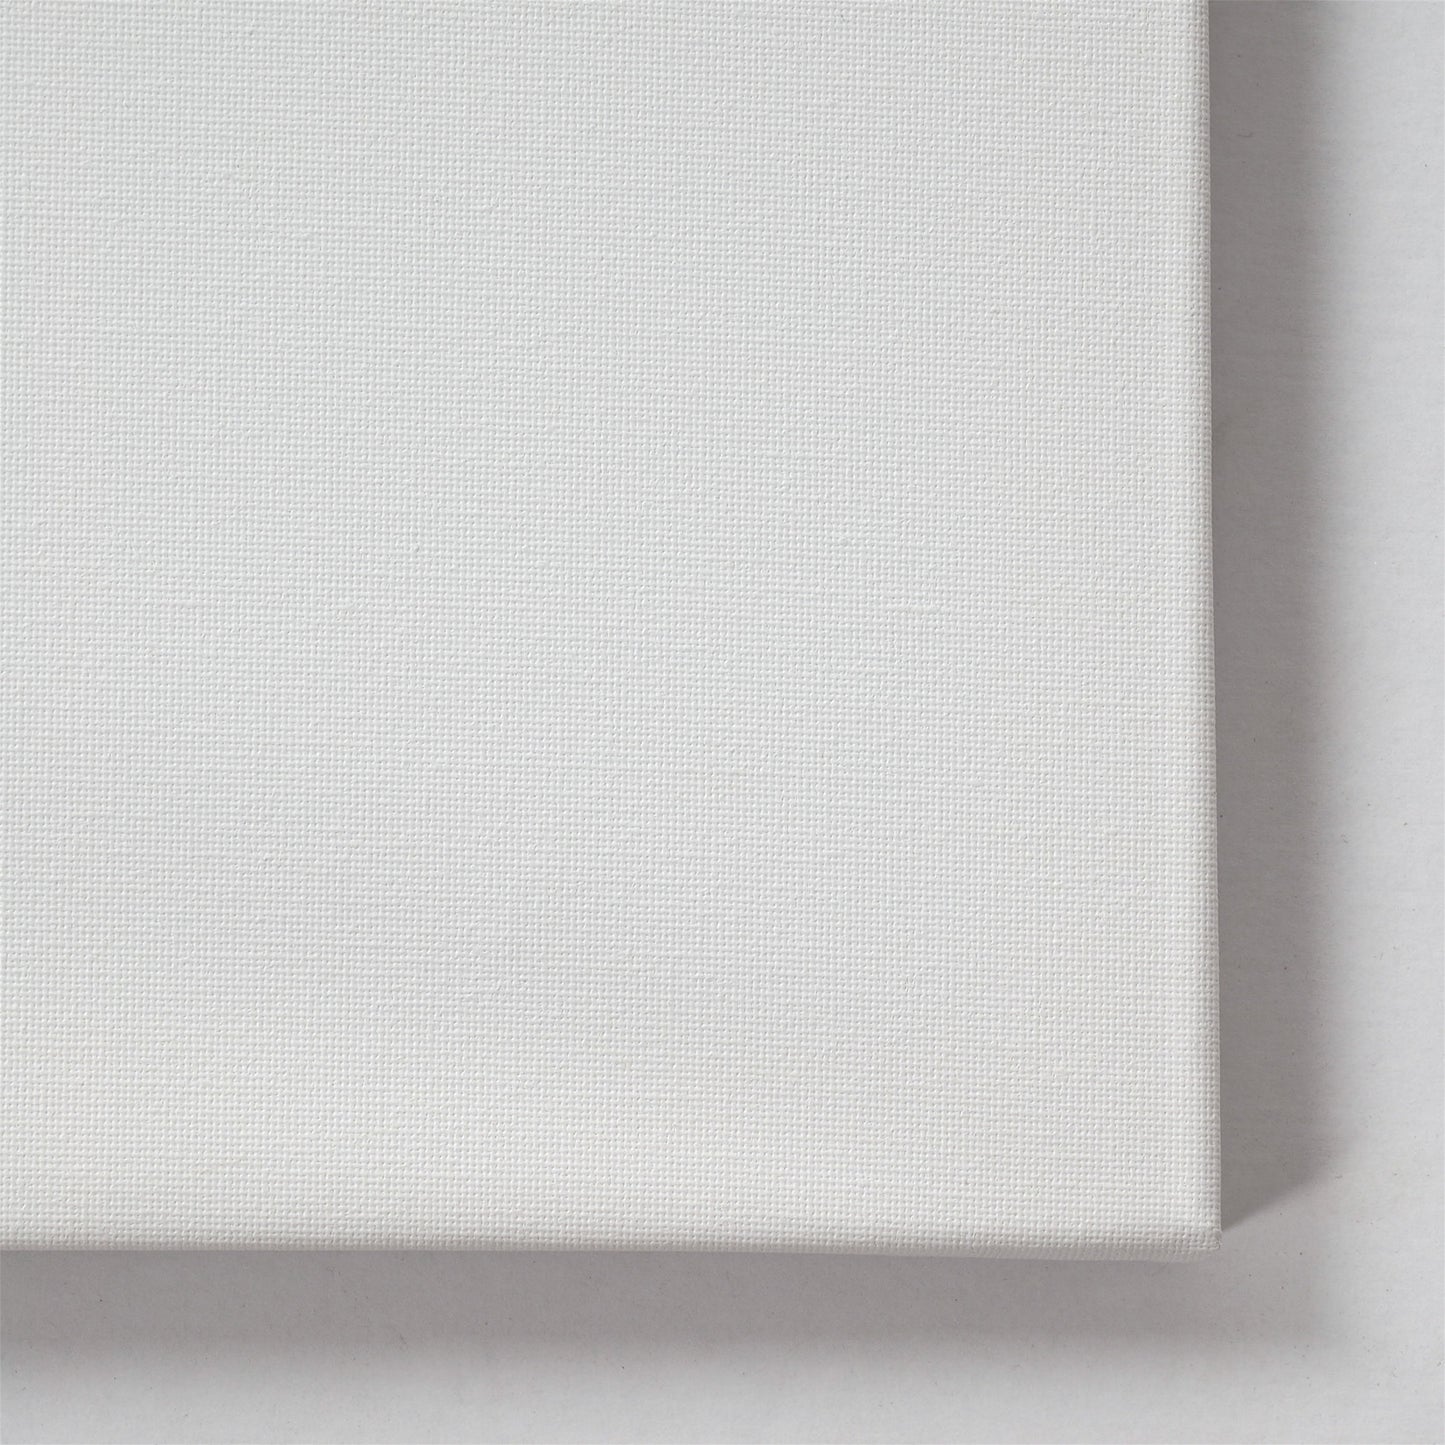 10 ART-STAR Leinwände | 30x60 cm | auf Keilrahmen, 100% Baumwolle